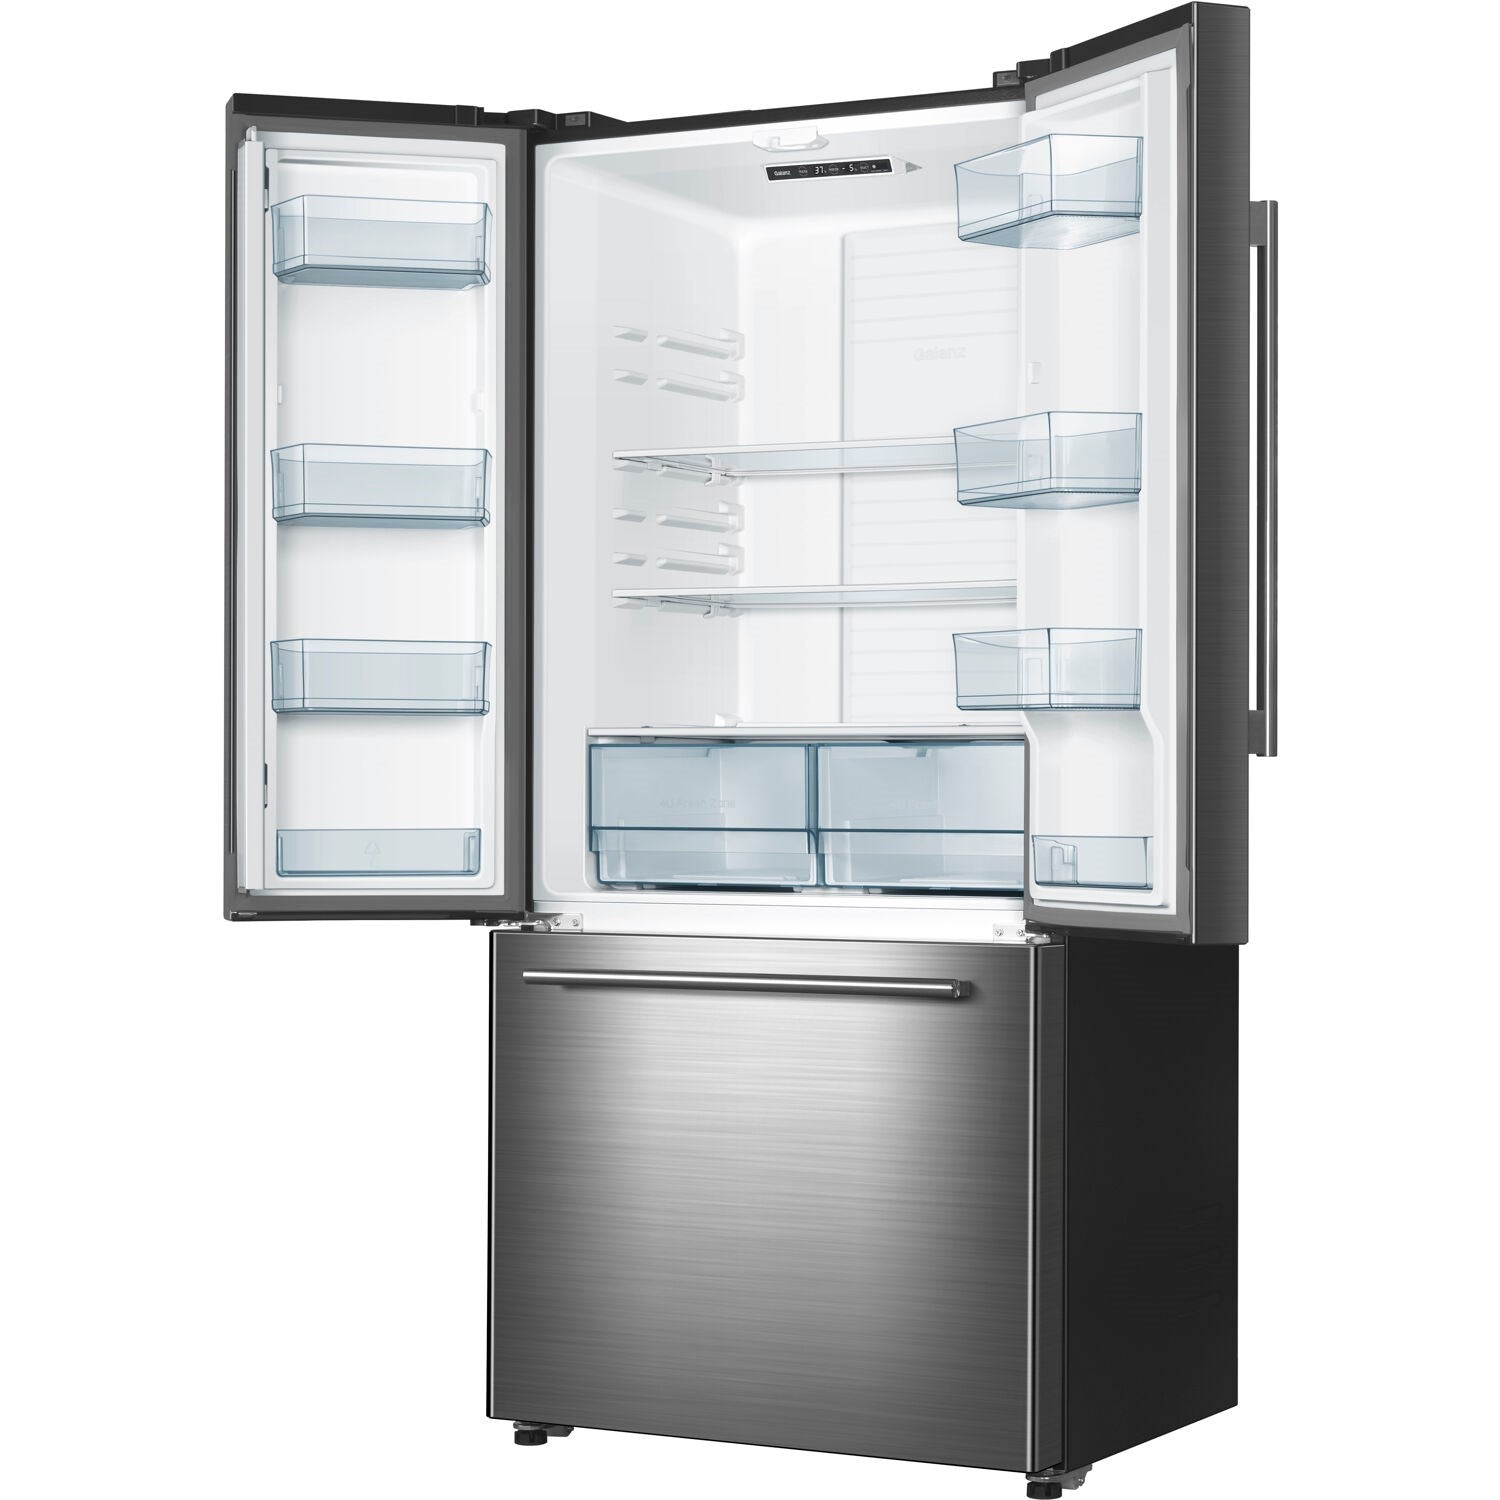 Galanz fridge/freezer 2 door